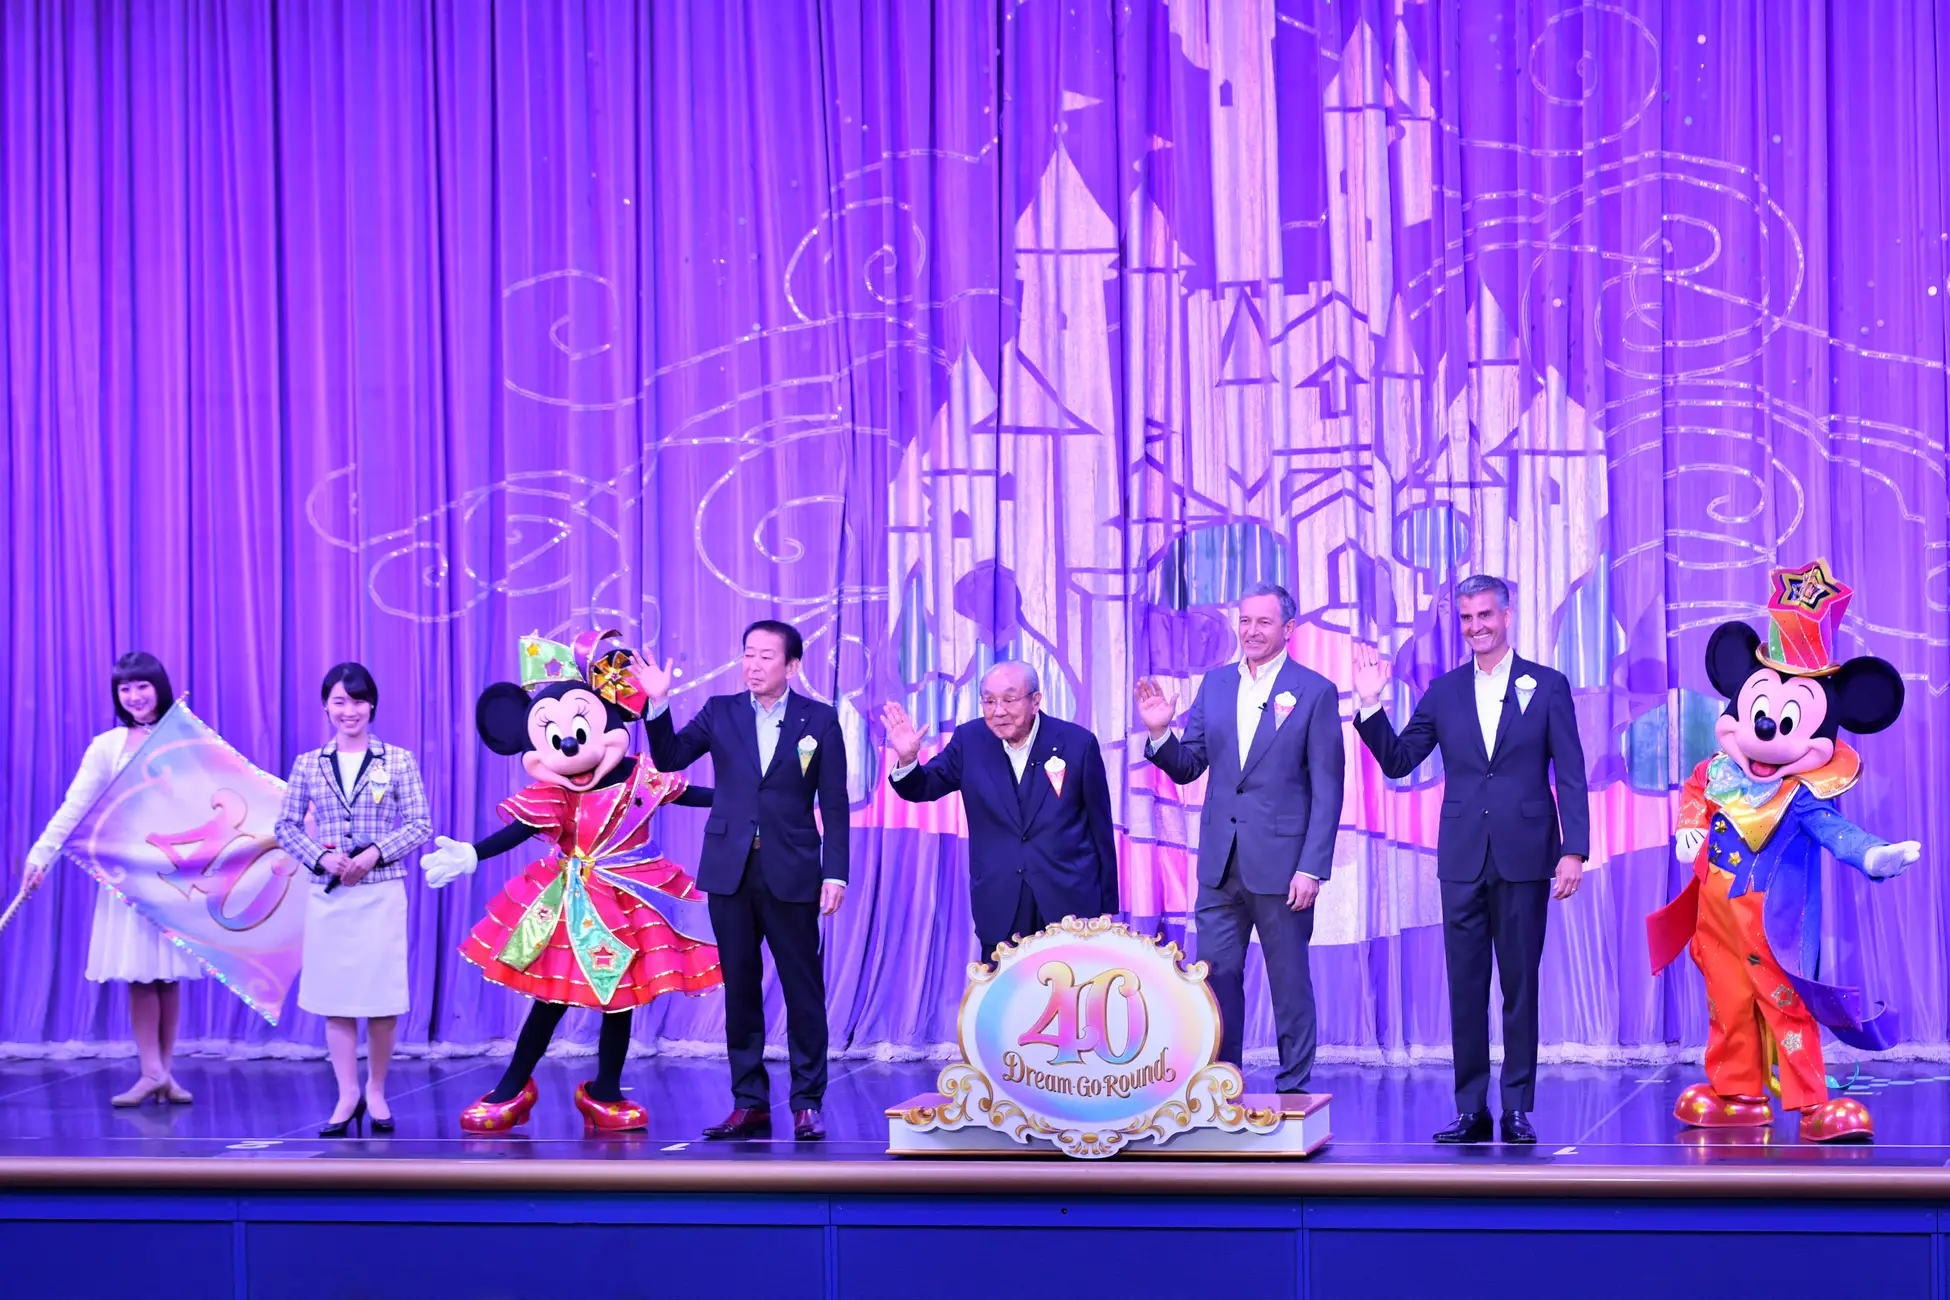 アニバーサリーイベント「東京ディズニーリゾート40周年“ドリームゴーラウンド”」の開幕を祝うオープニングセレモニー開催